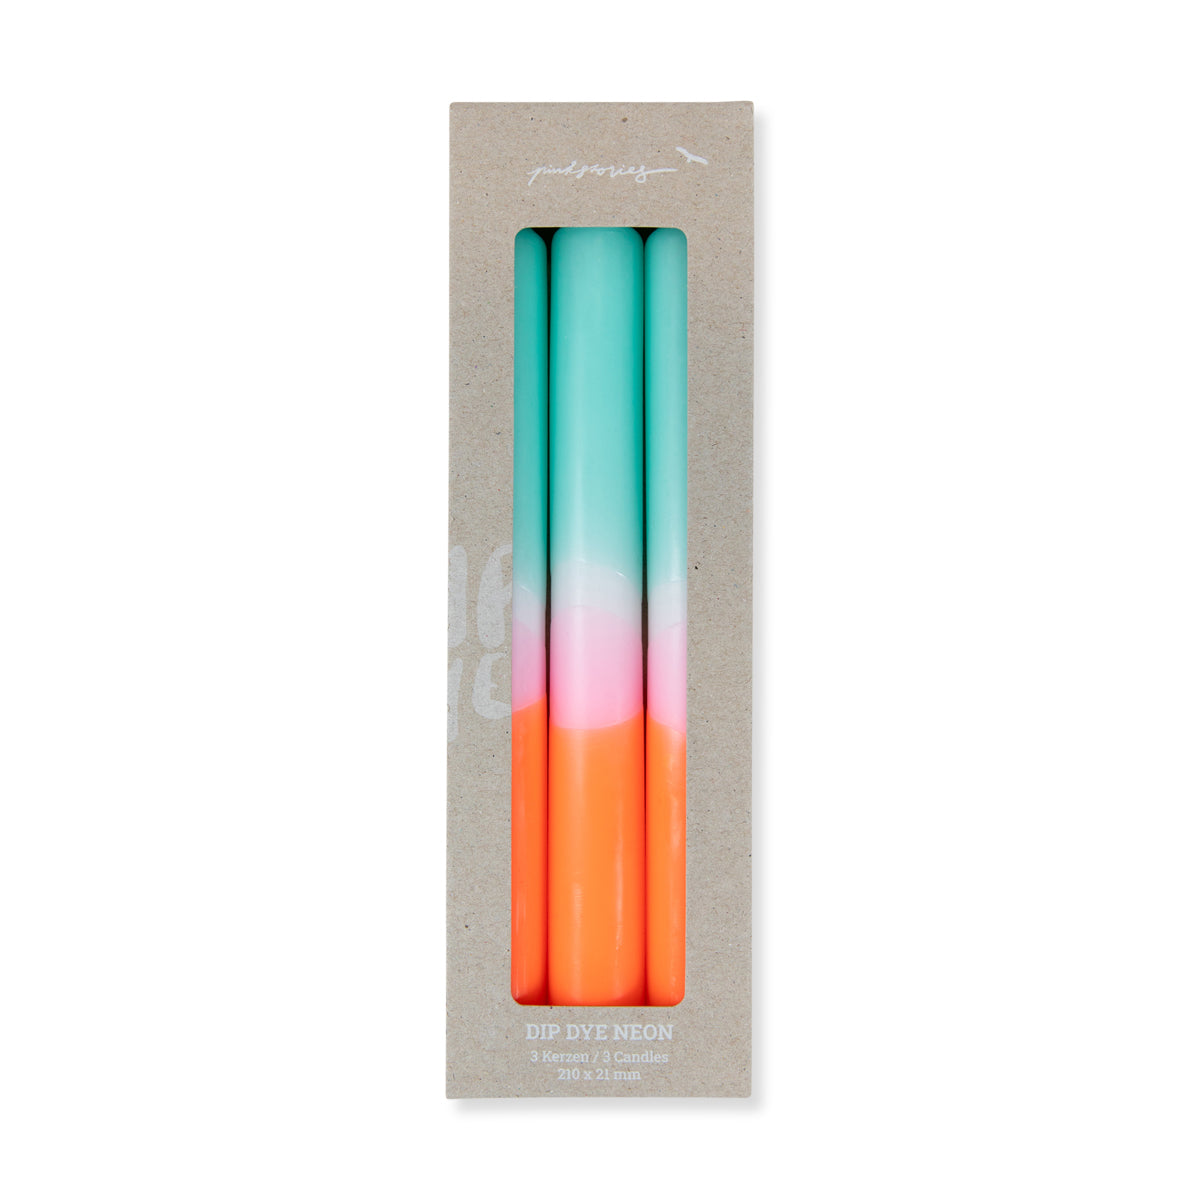 Dip Dye Neon Sorbet Candles S/3